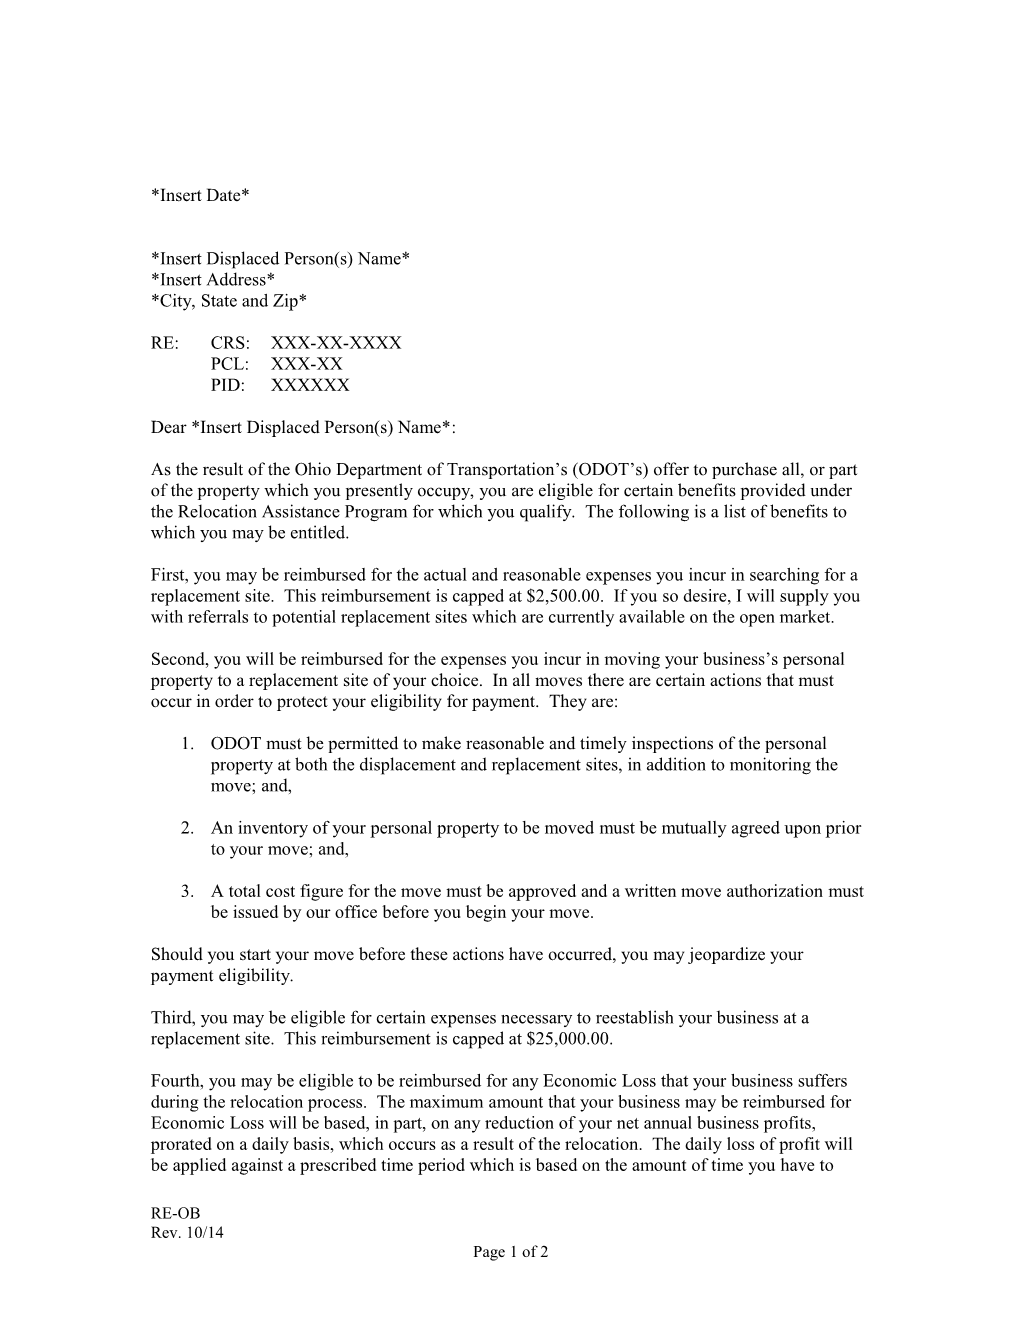 (RE-OB) Non Residential Owner Offer Letter